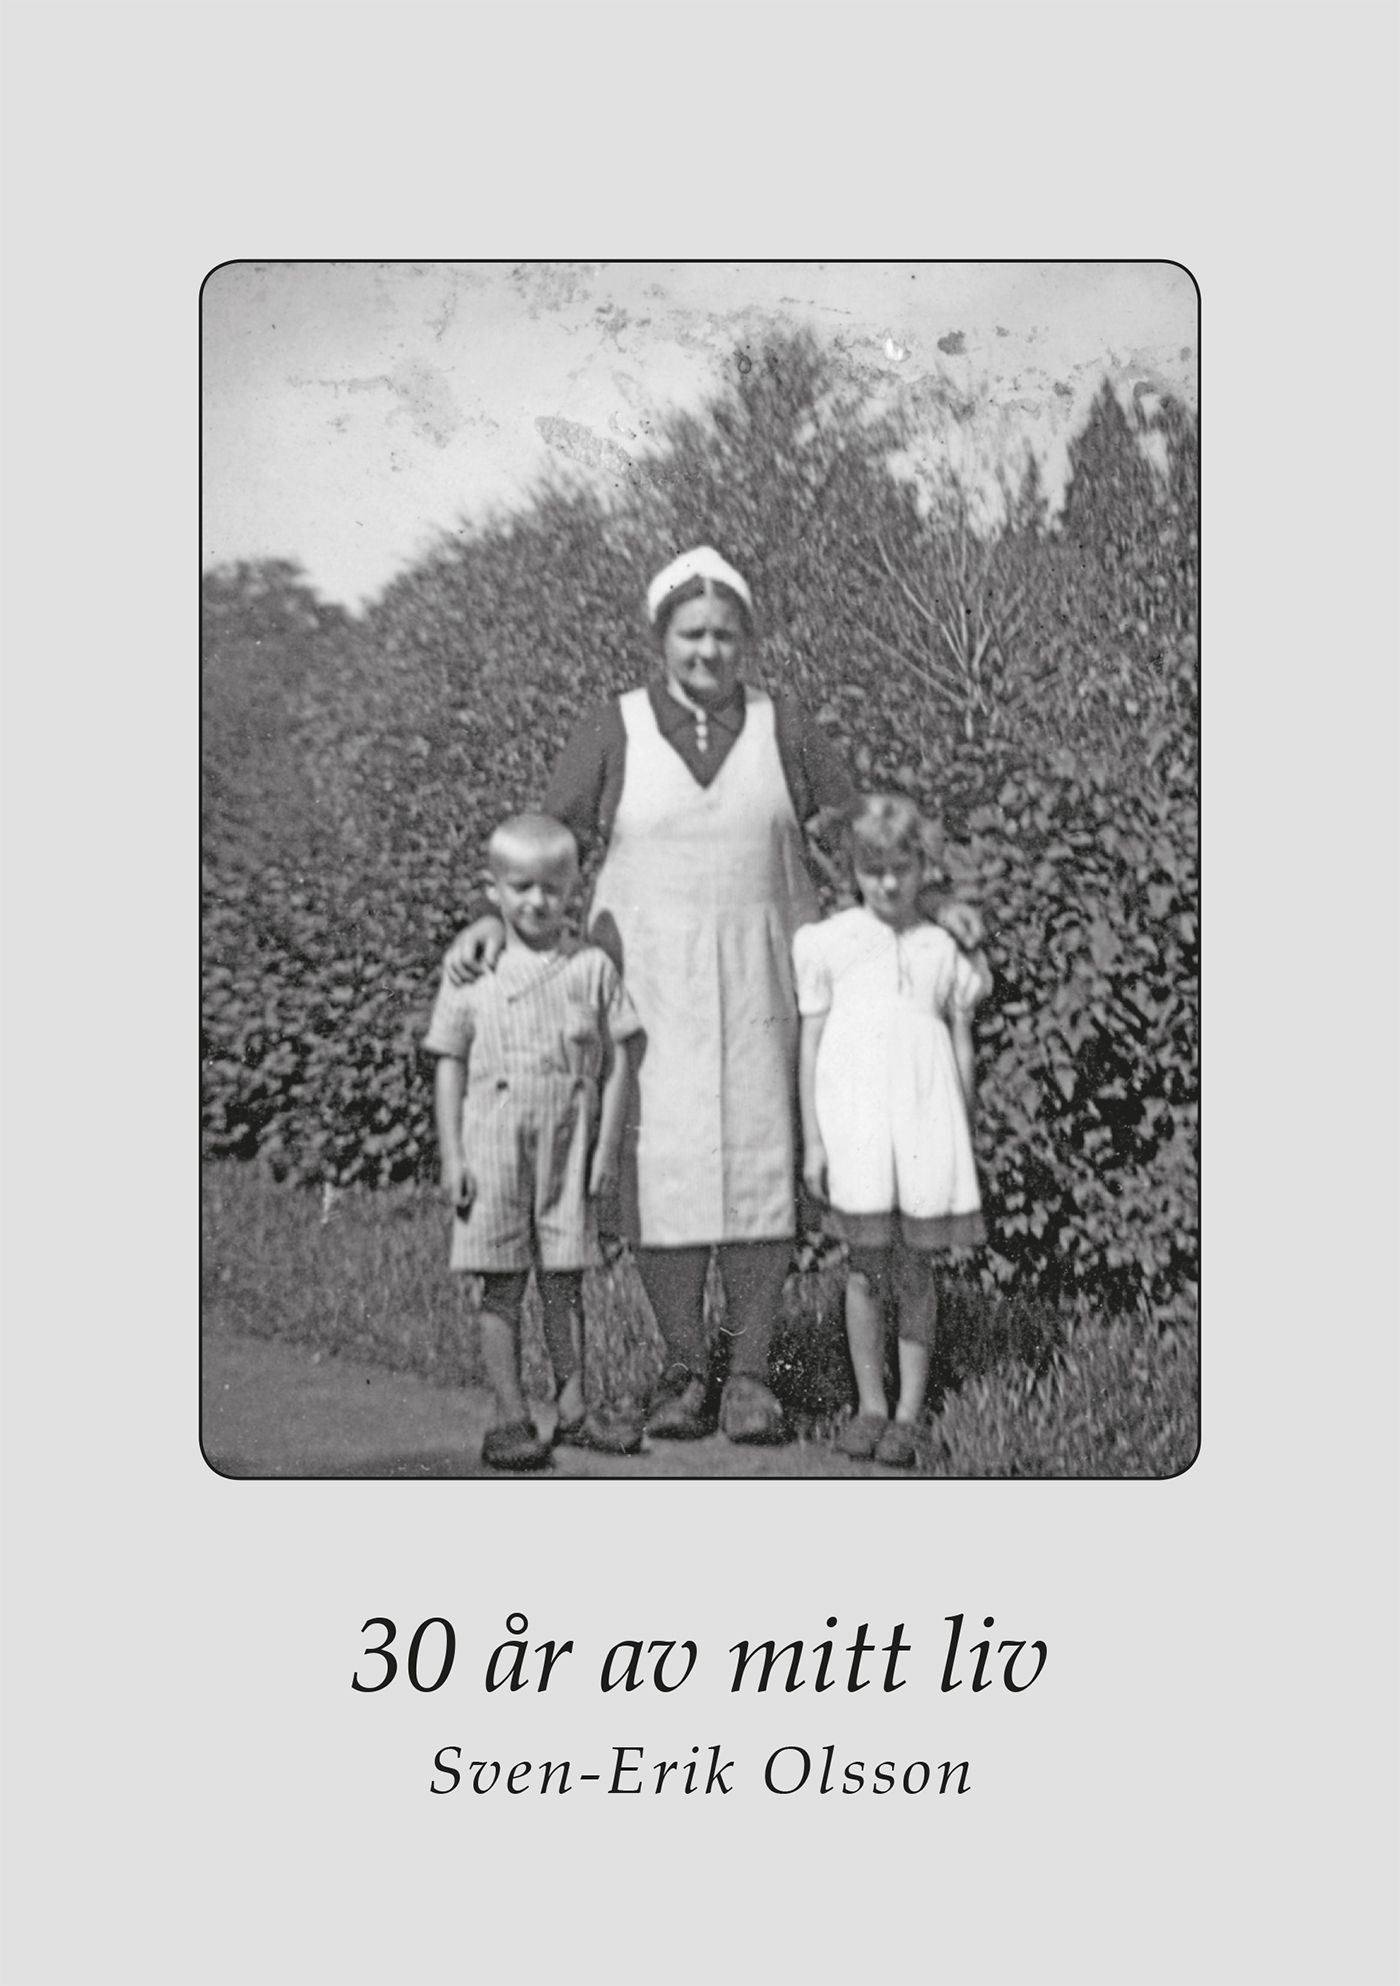 30 år av mitt liv, eBook by Sven-Erik Olsson